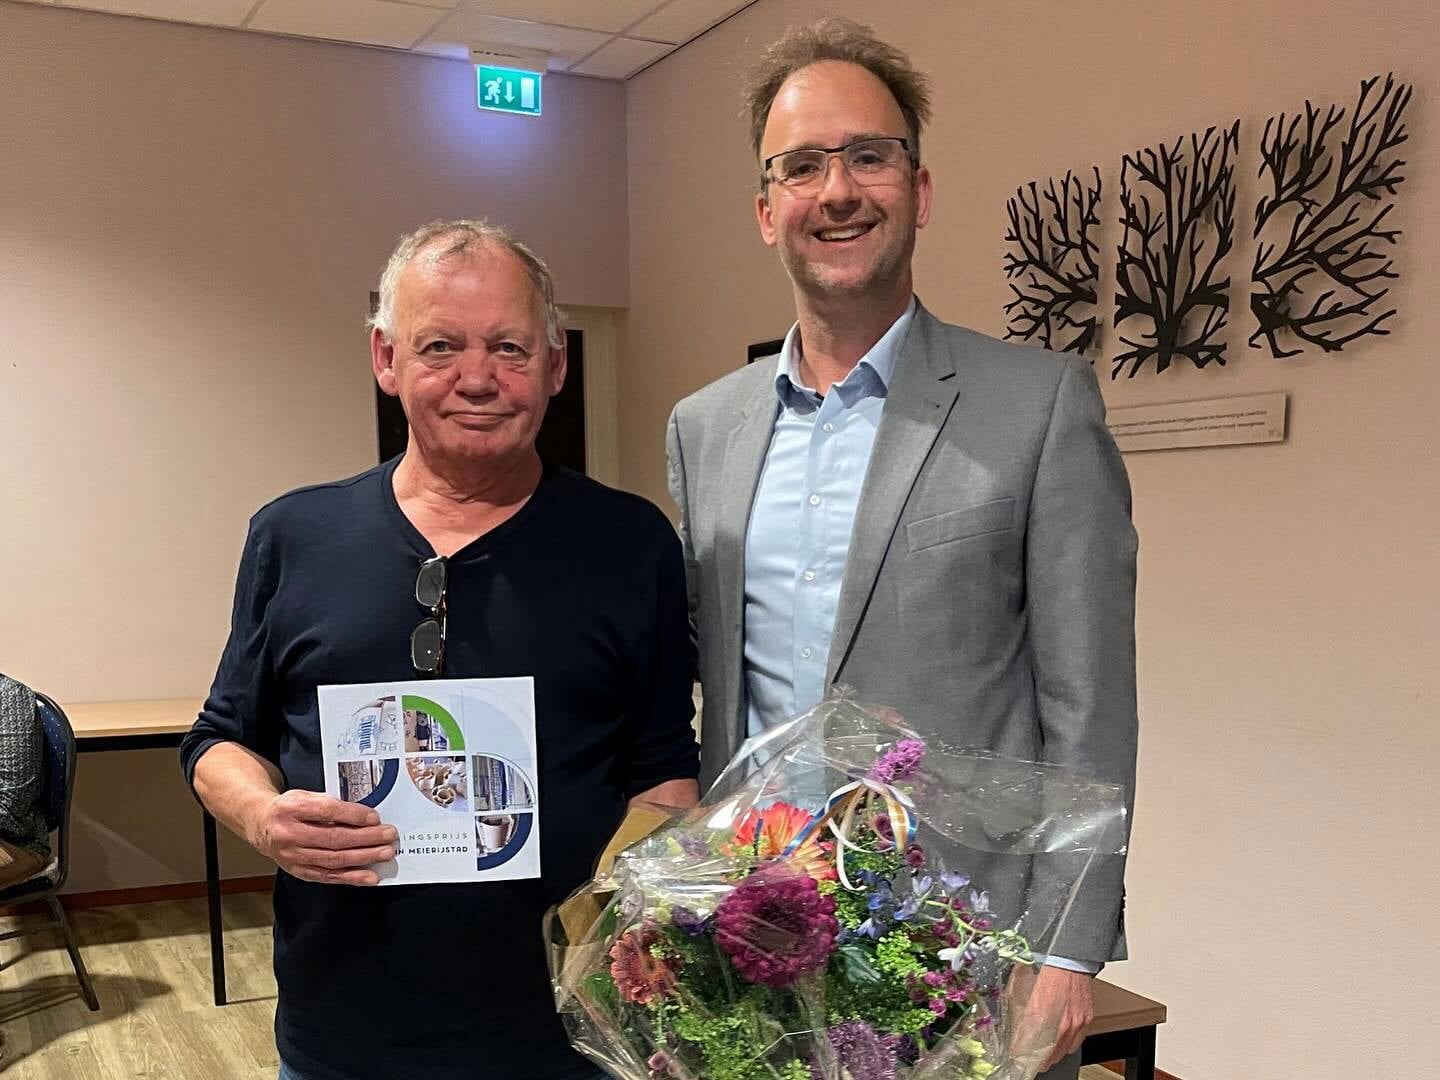 Jan Donkers is al 47 jaar bestuurslid van Stichting Vrije Vogels en ontving de prijs uit handen van wethouder Menno Roozendaal.